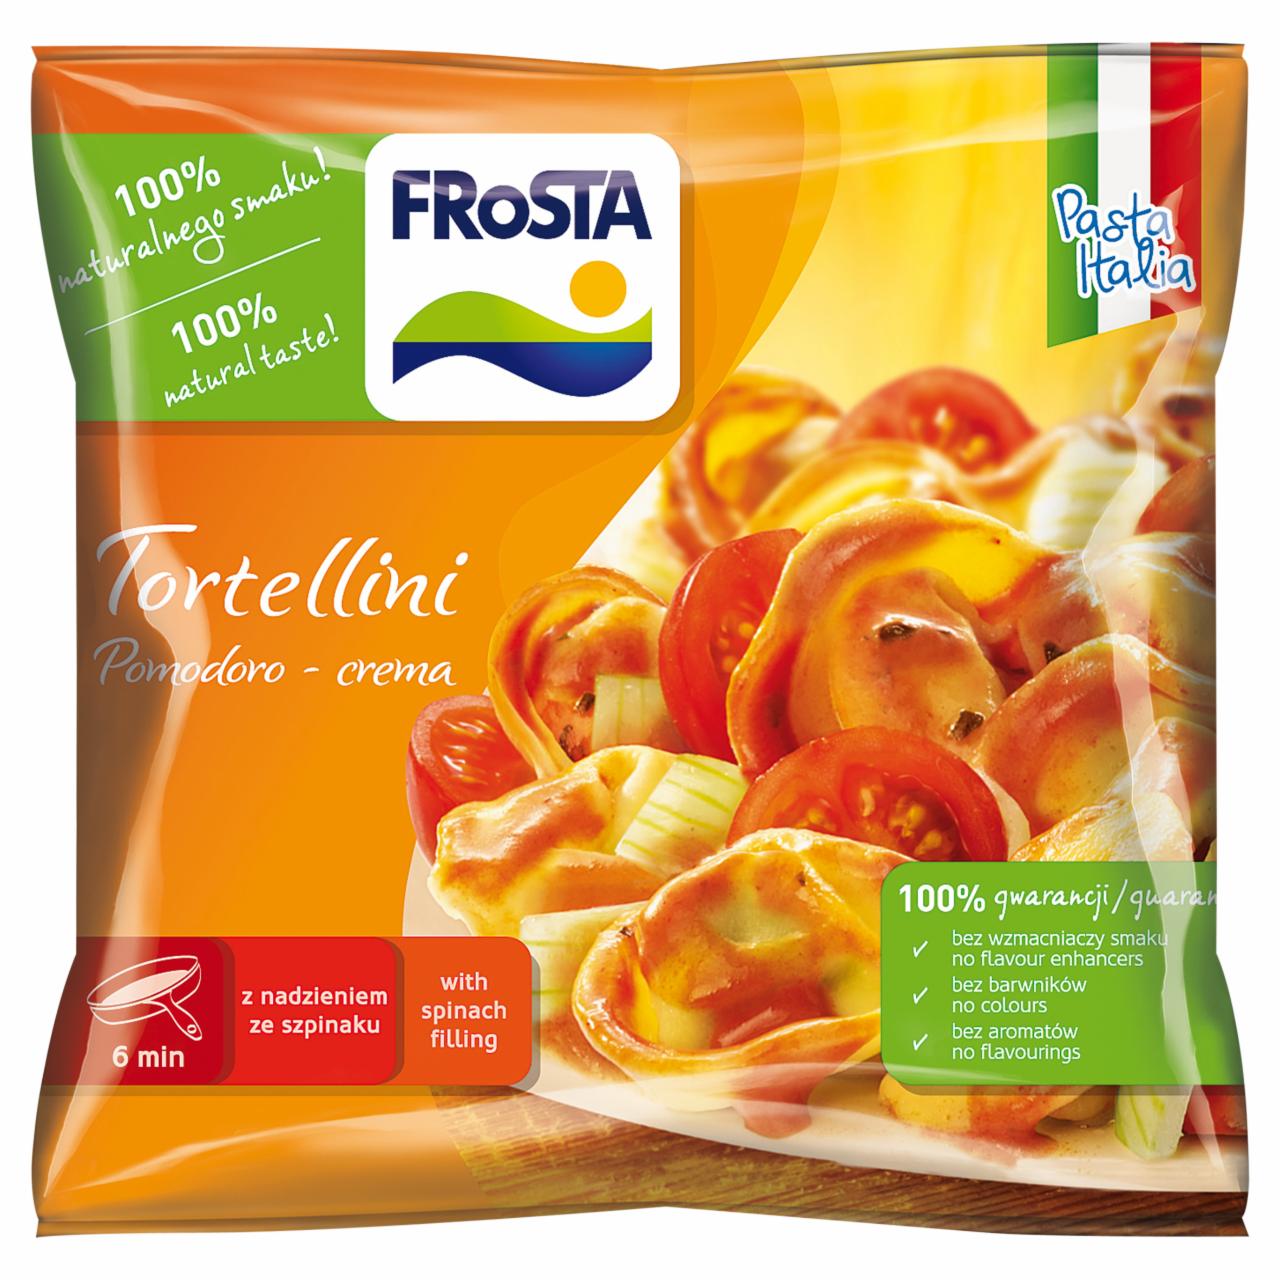 Zdjęcia - FRoSTA Tortellini Pomodoro-crema Włoskie danie 500 g